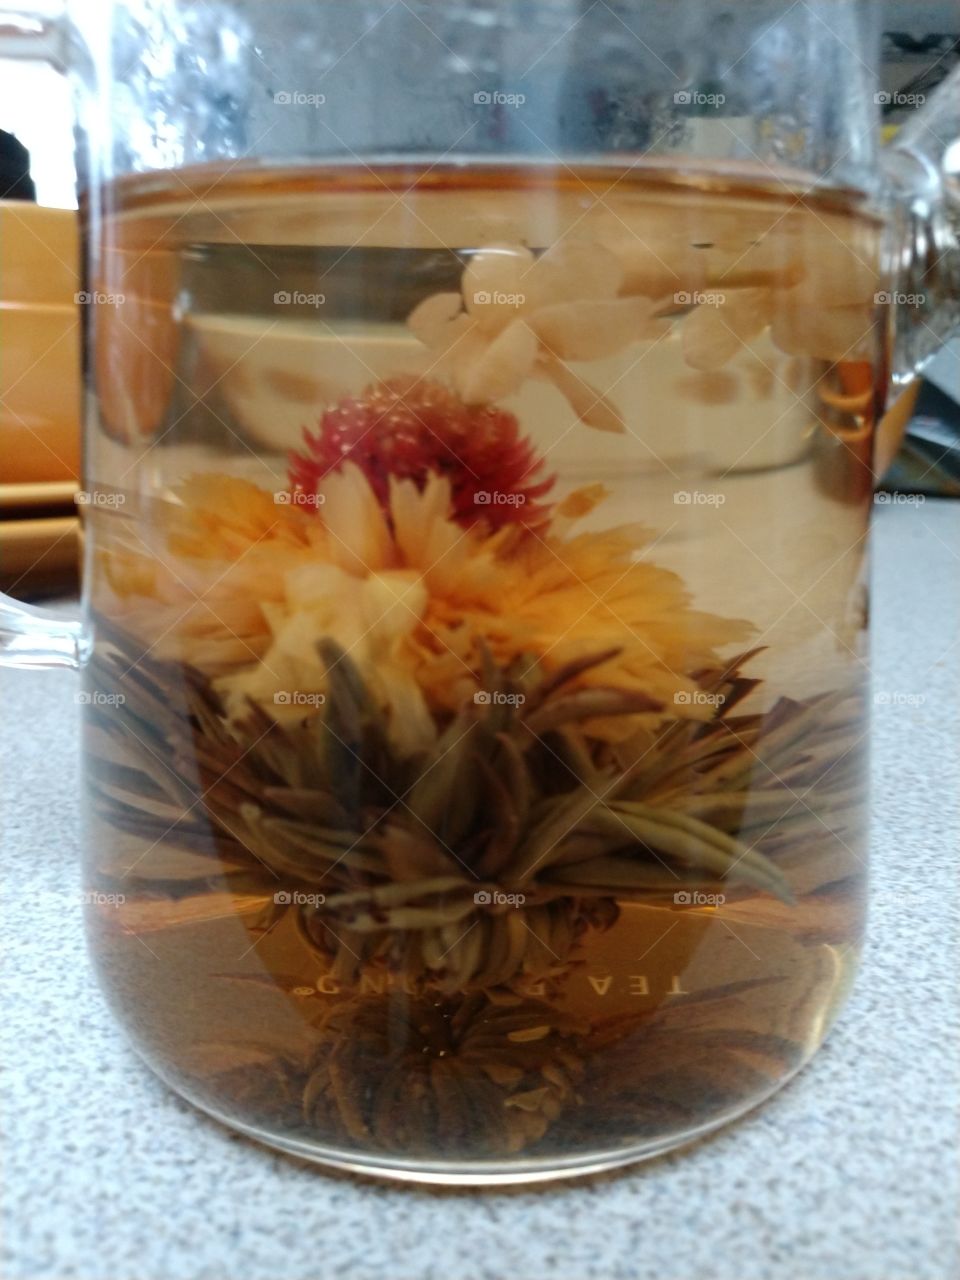 Blooming tea